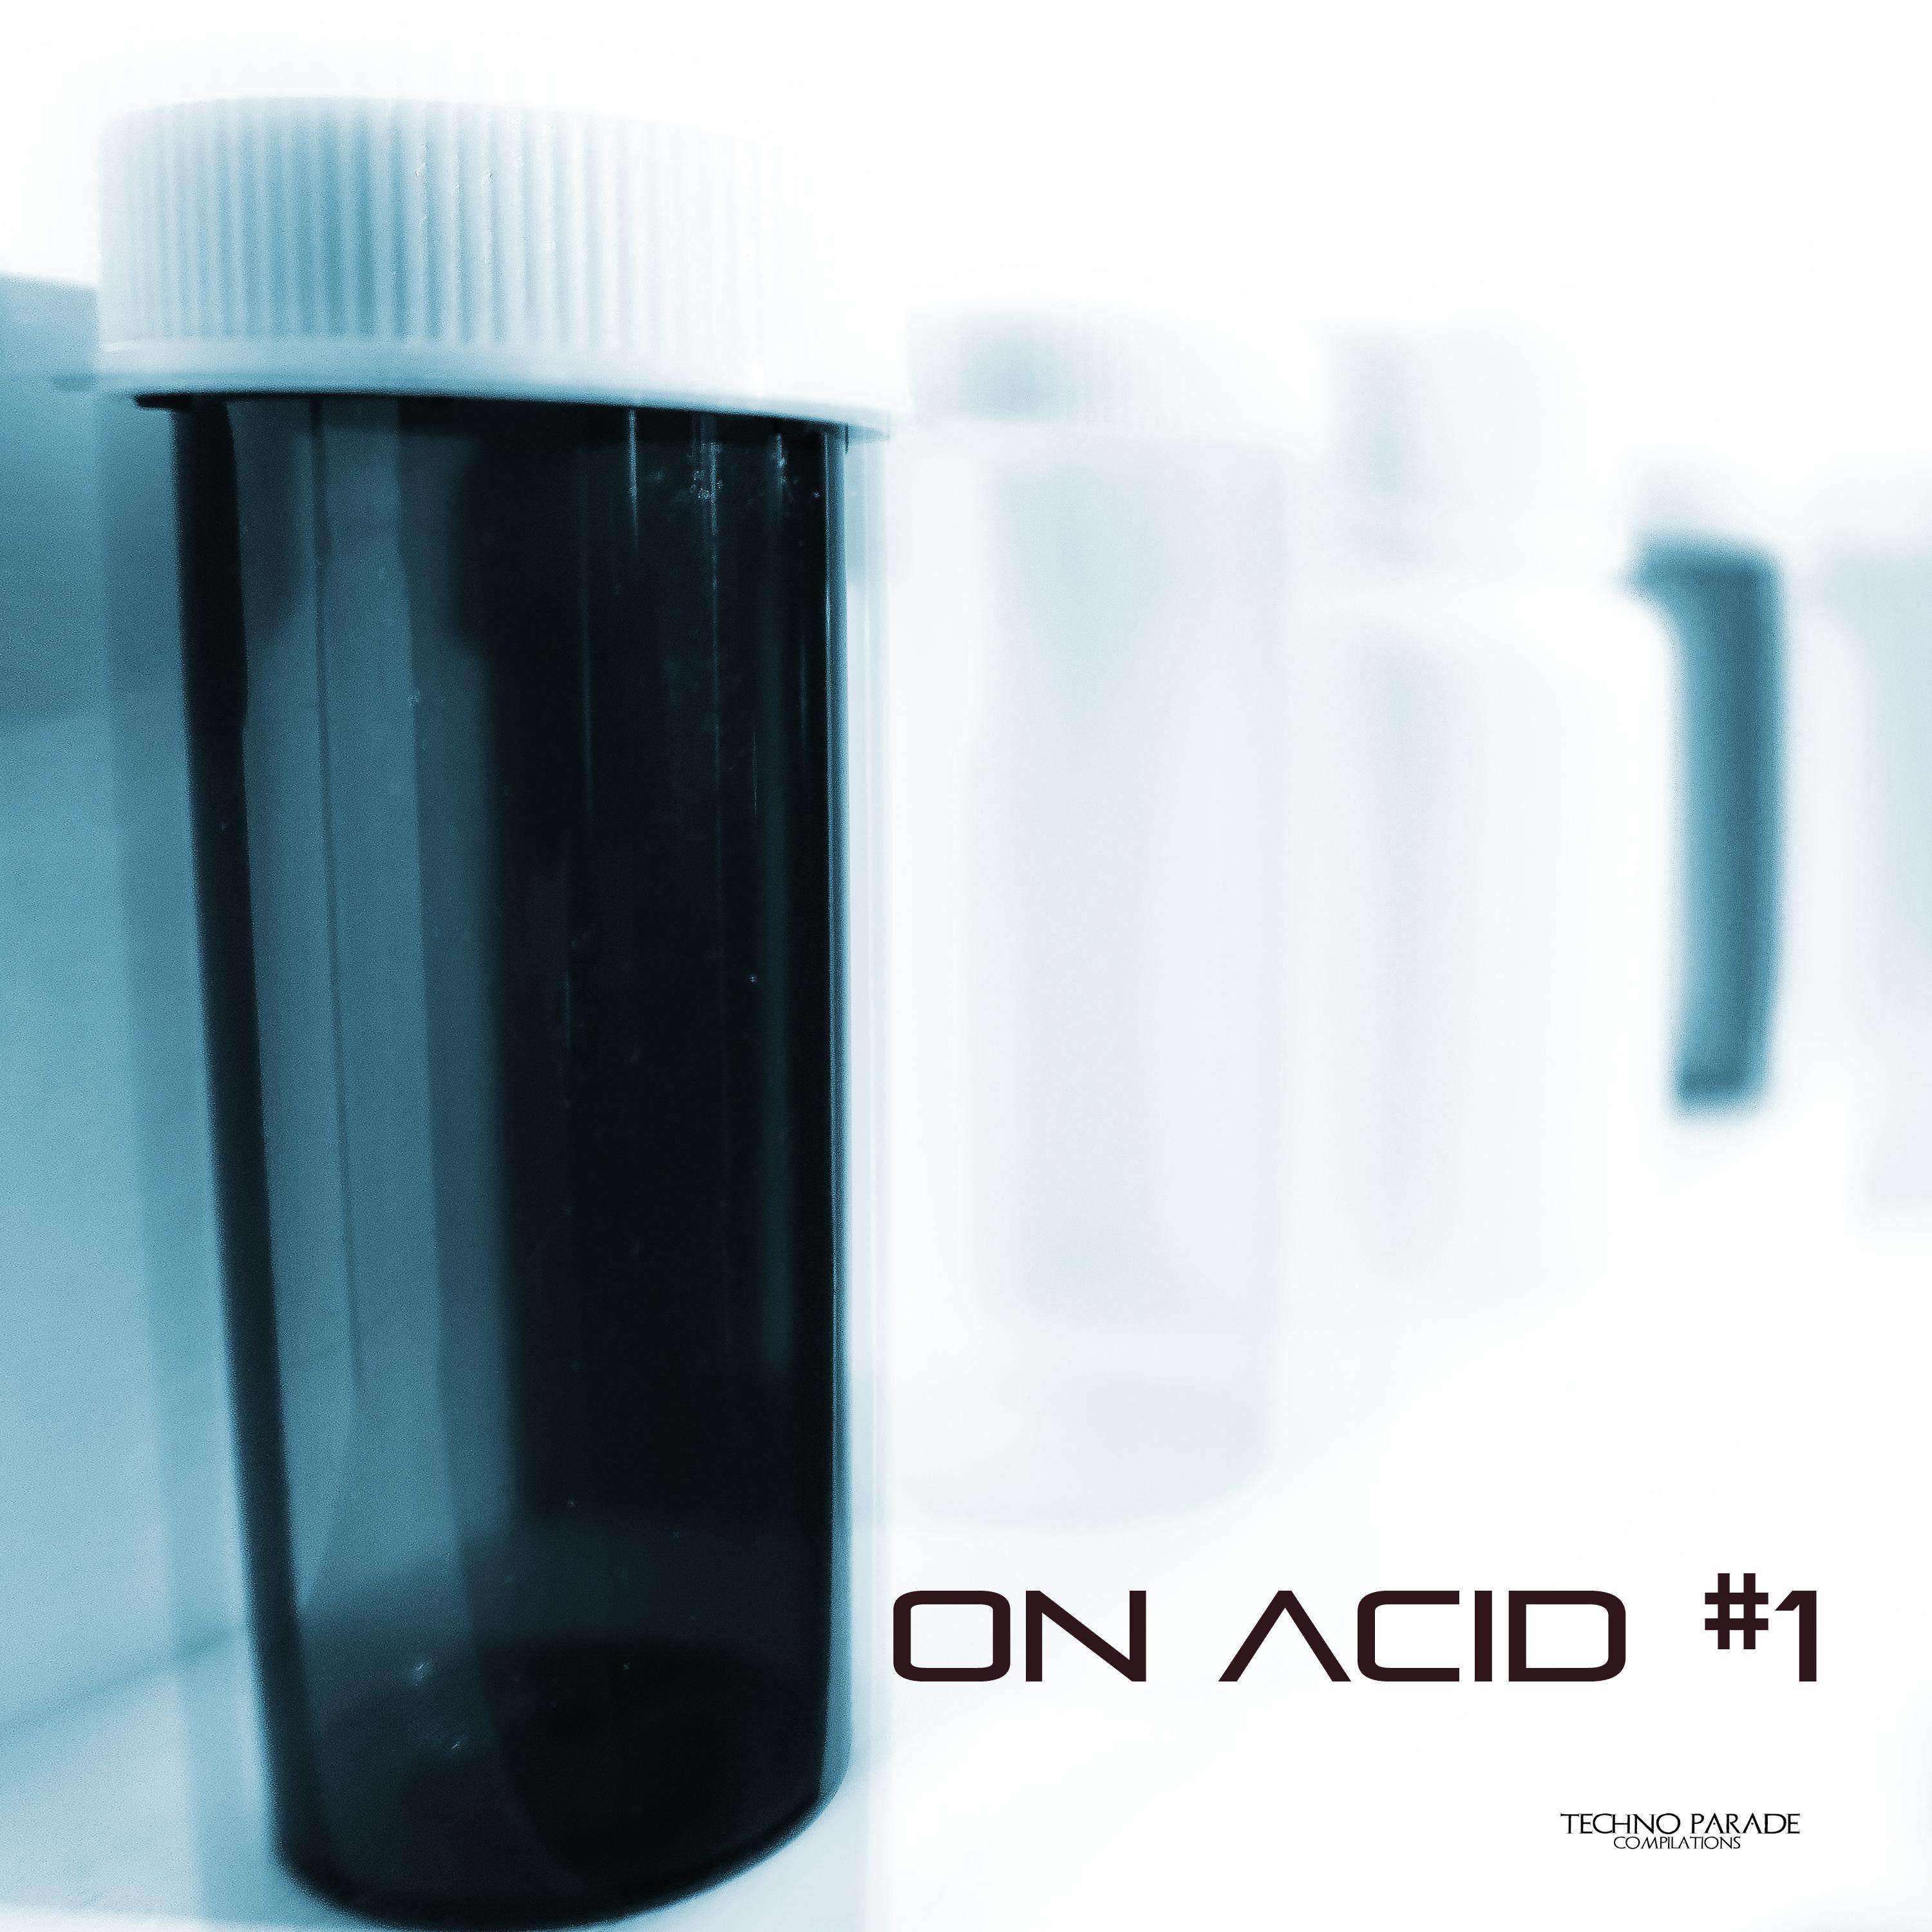 On Acid #1